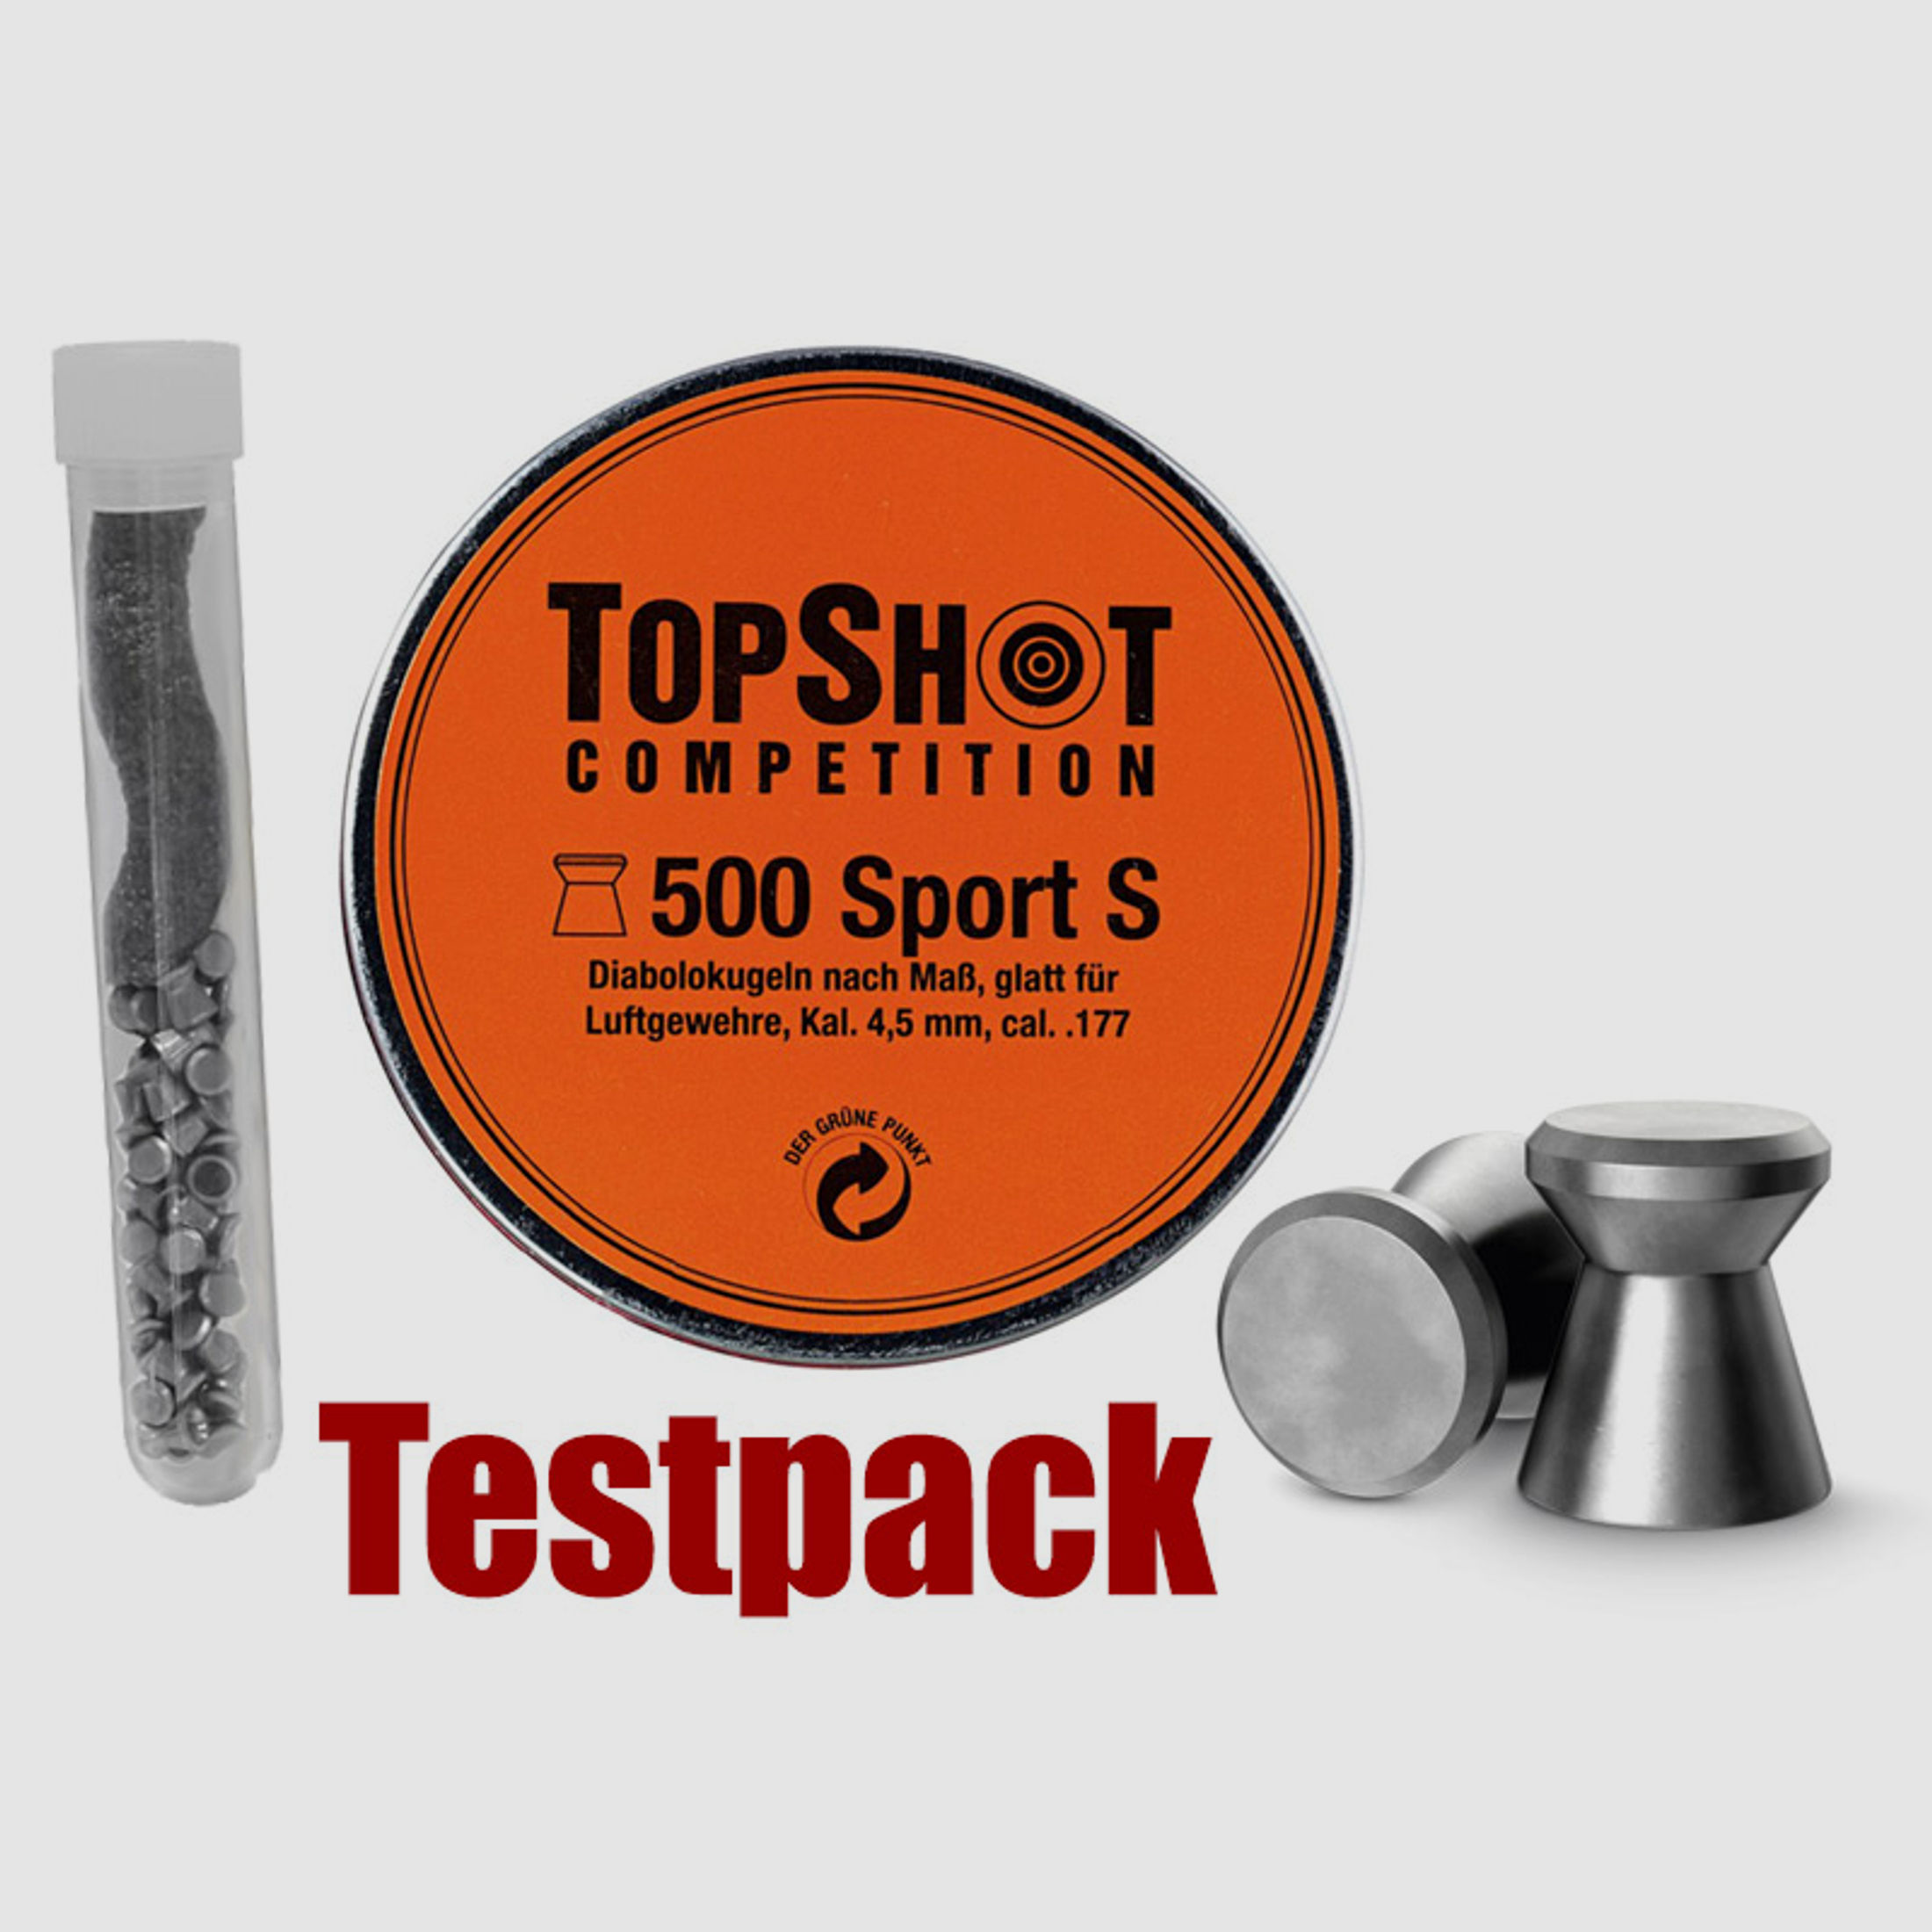 Testpack Flachkopf Diabolos Topshot Competition Sport S Kaliber 4,5 mm 0,53 g glatt 40 StĂĽck